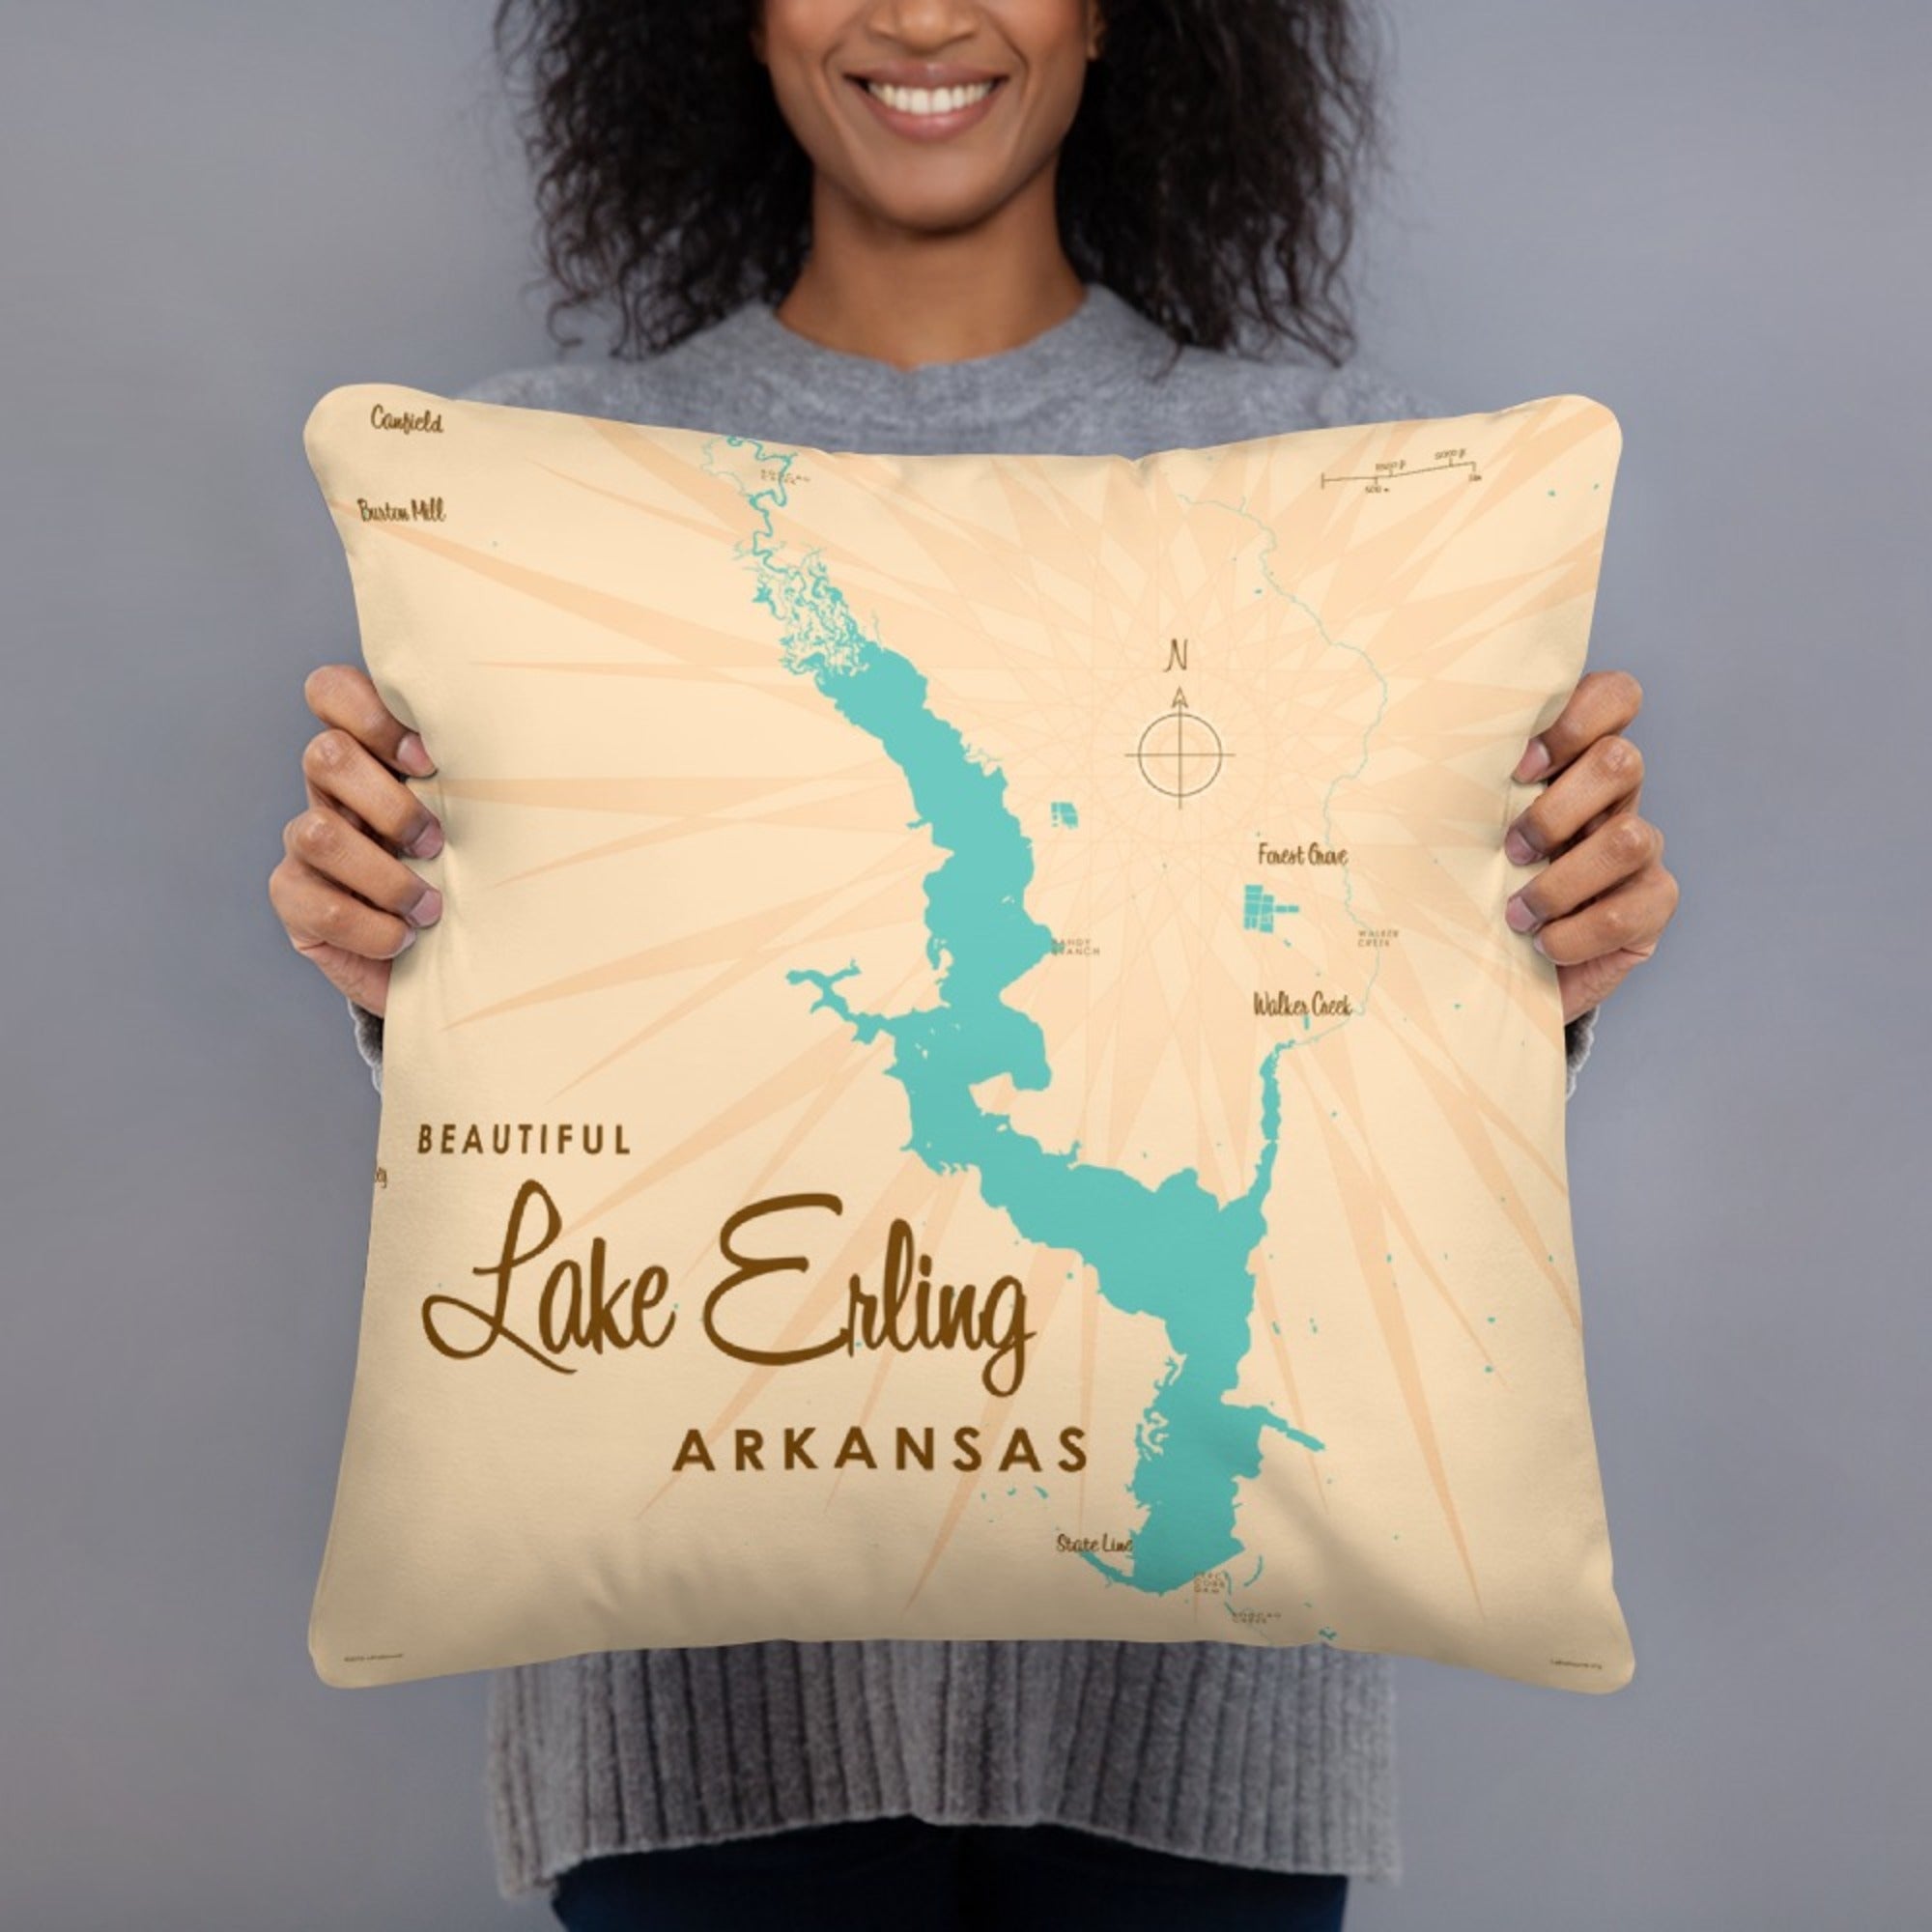 Lake Erling Arkansas Pillow